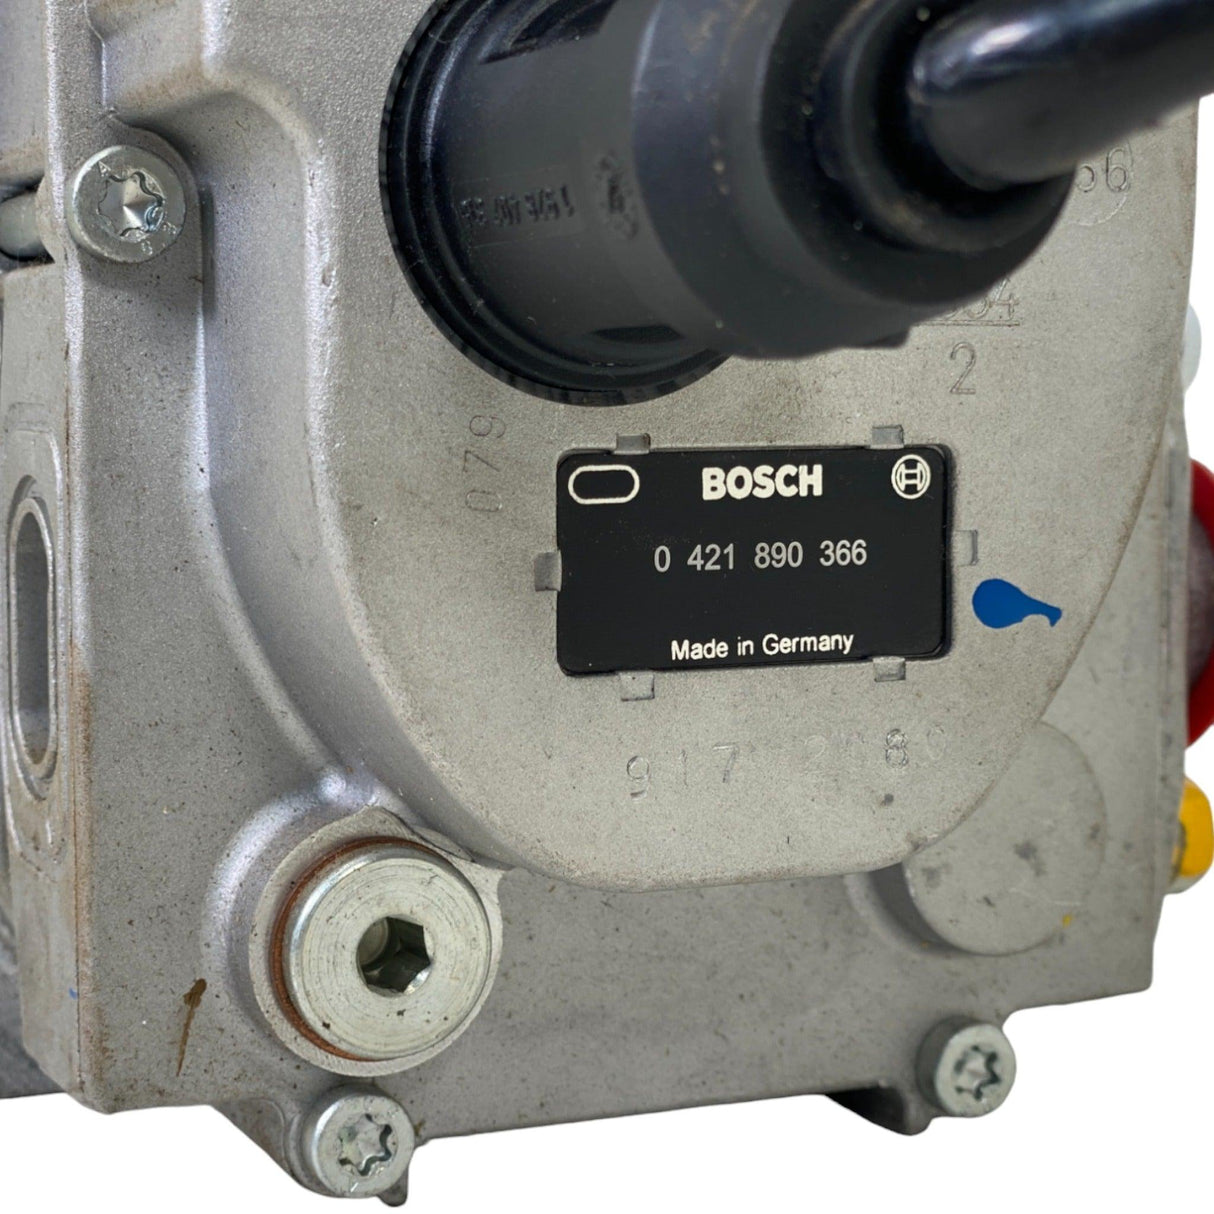 0 402 796 207 Genuine Bosch Fuel Injection Pump.